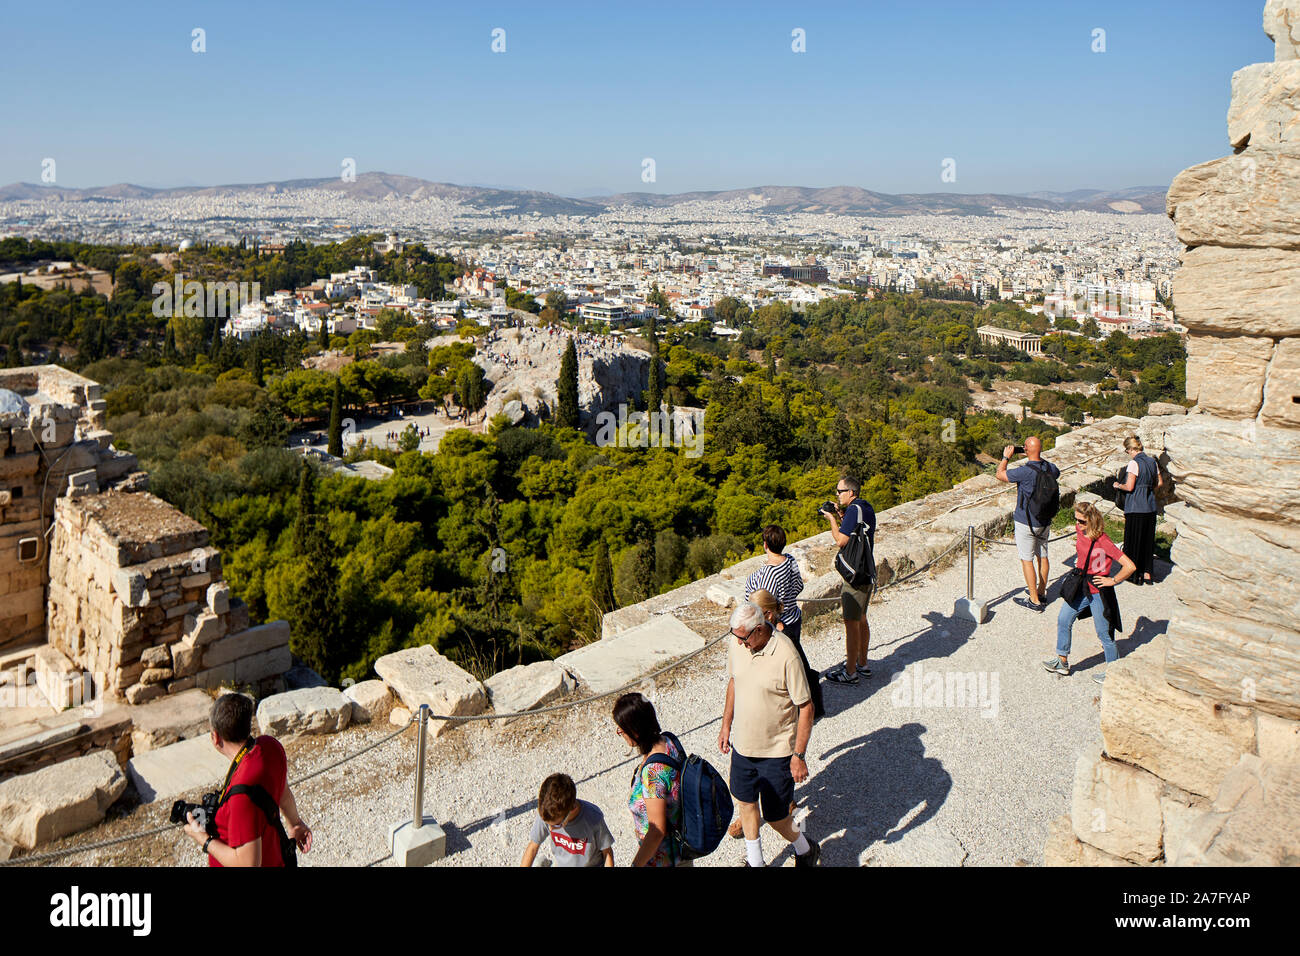 Atene capitale della Grecia vista dal punto di riferimento le rovine del tempio Parthenon Acropoli di Atene, situato sulla cima di una collina rocciosa, che domina la città di Atene Foto Stock